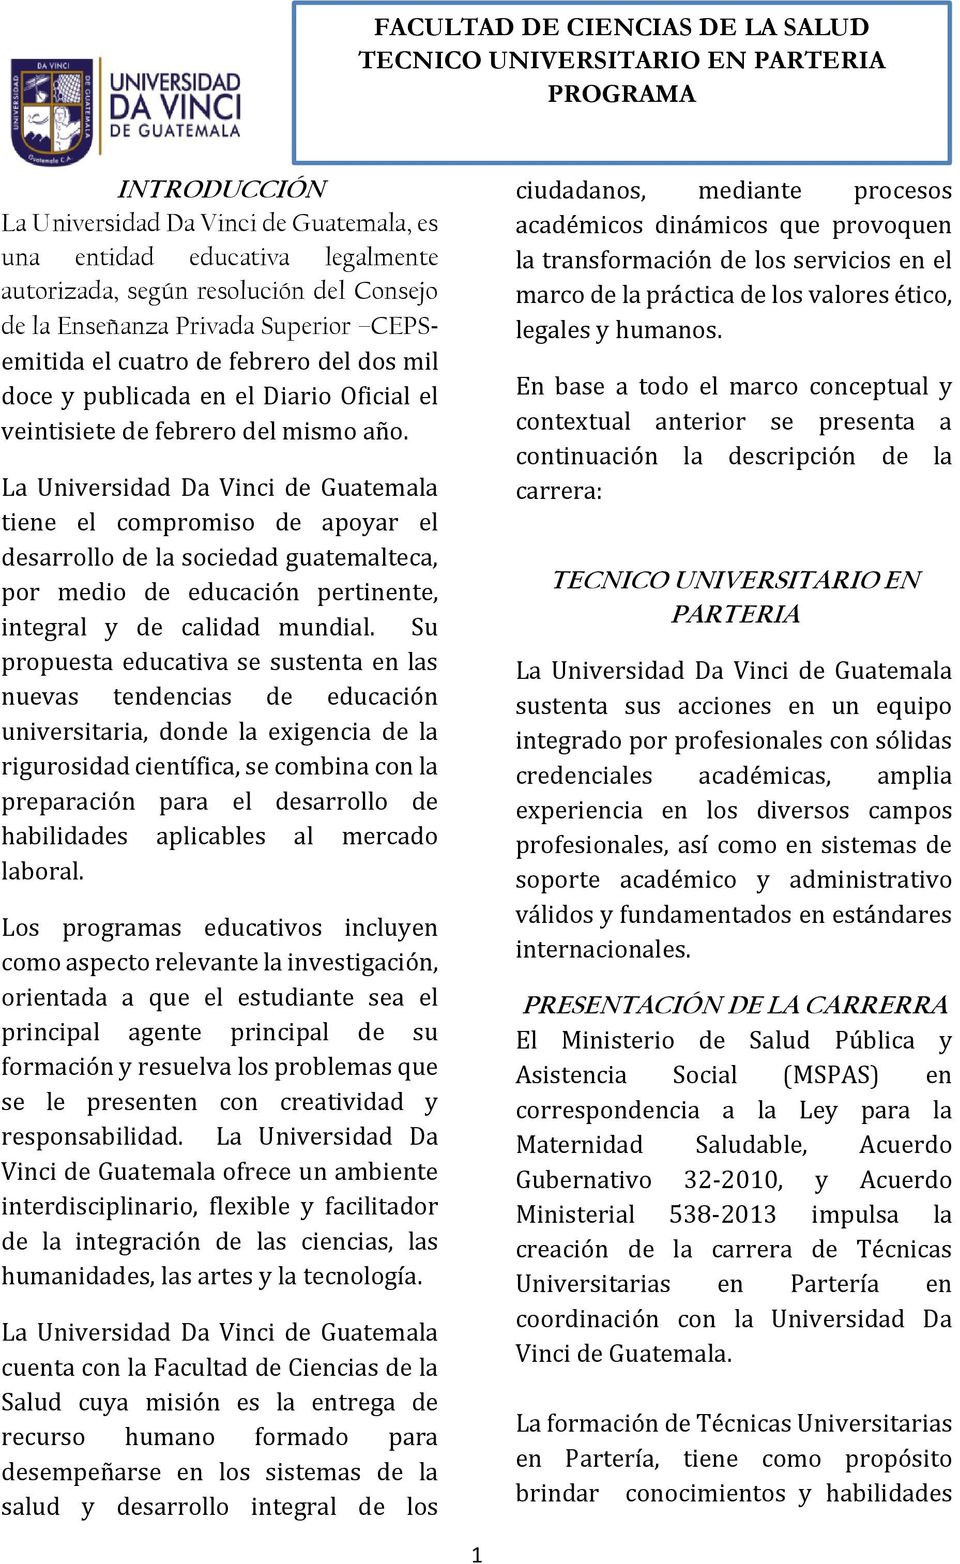 La Universidad Da Vinci de Guatemala tiene el compromiso de apoyar el desarrollo de la sociedad guatemalteca, por medio de educación pertinente, integral y de calidad mundial.